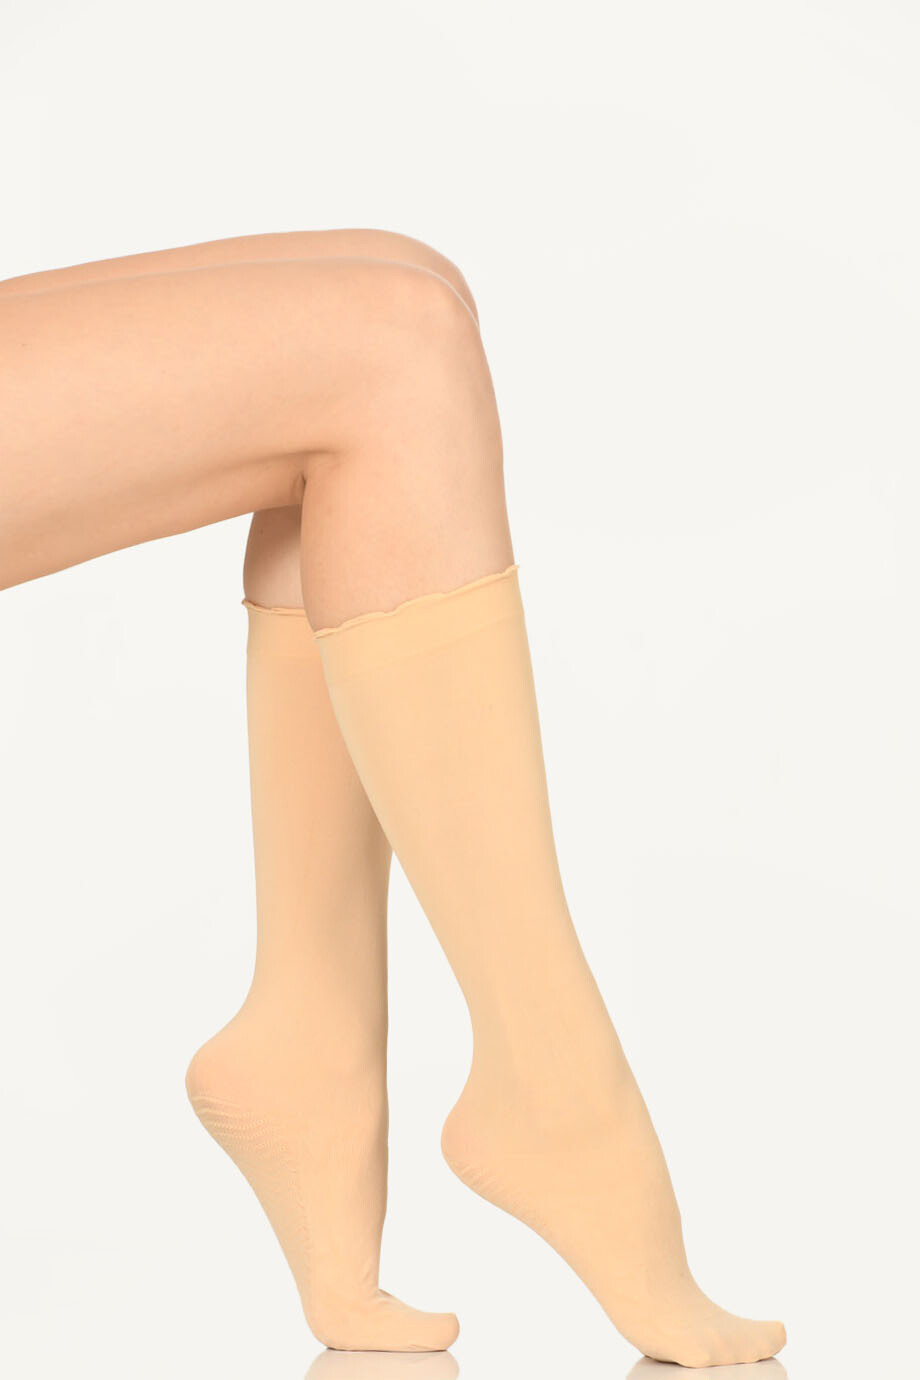 Sahra Masaj Pantolon Çorabı